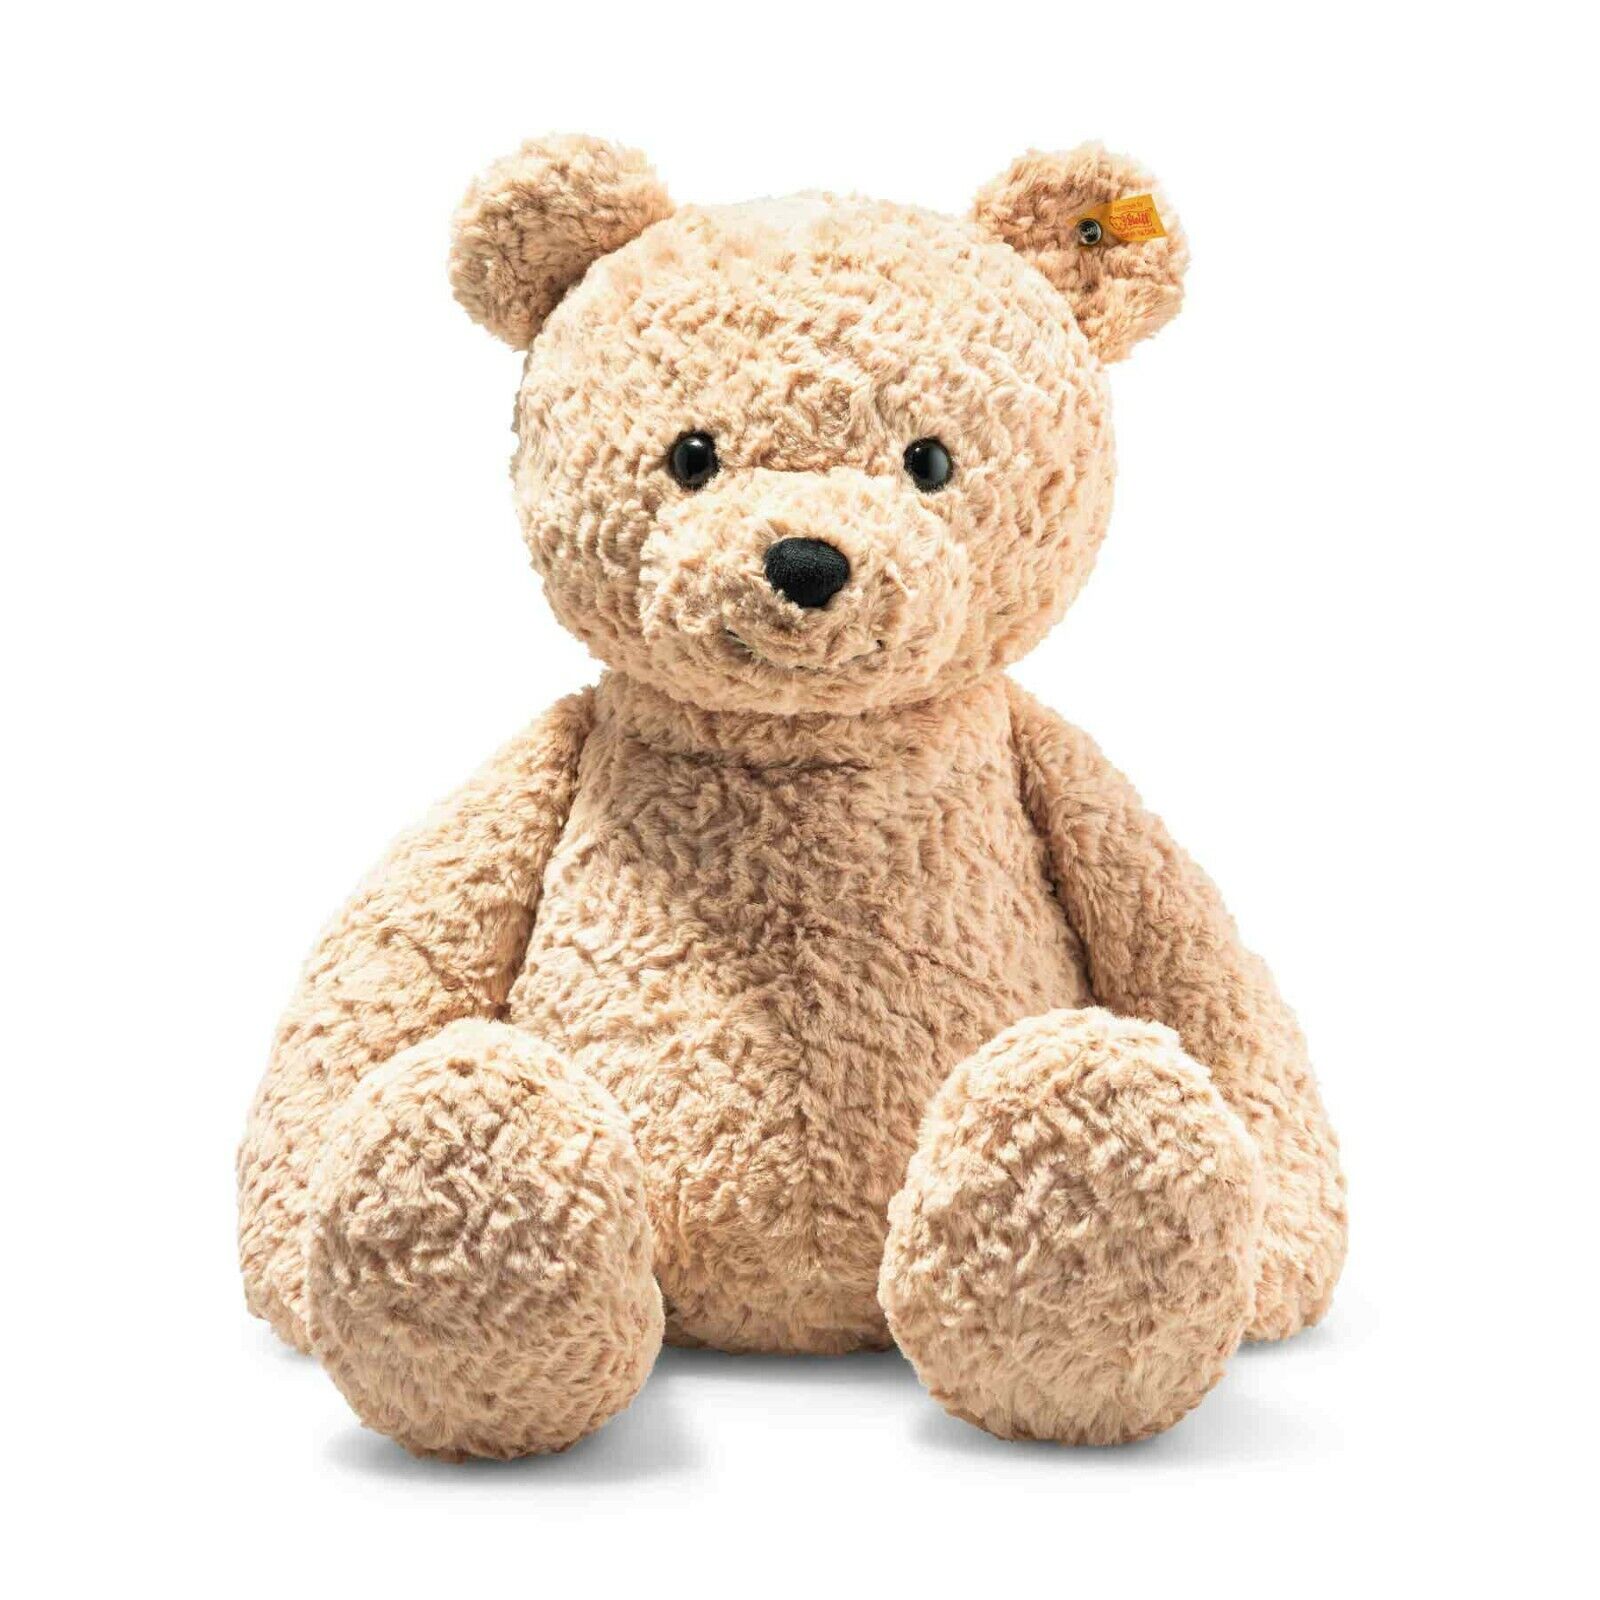 STEIFF Teddybär Jimmy 55 cm hellbraun 067181 - Neu - für Kinder und Sammler ab 0 Jahre